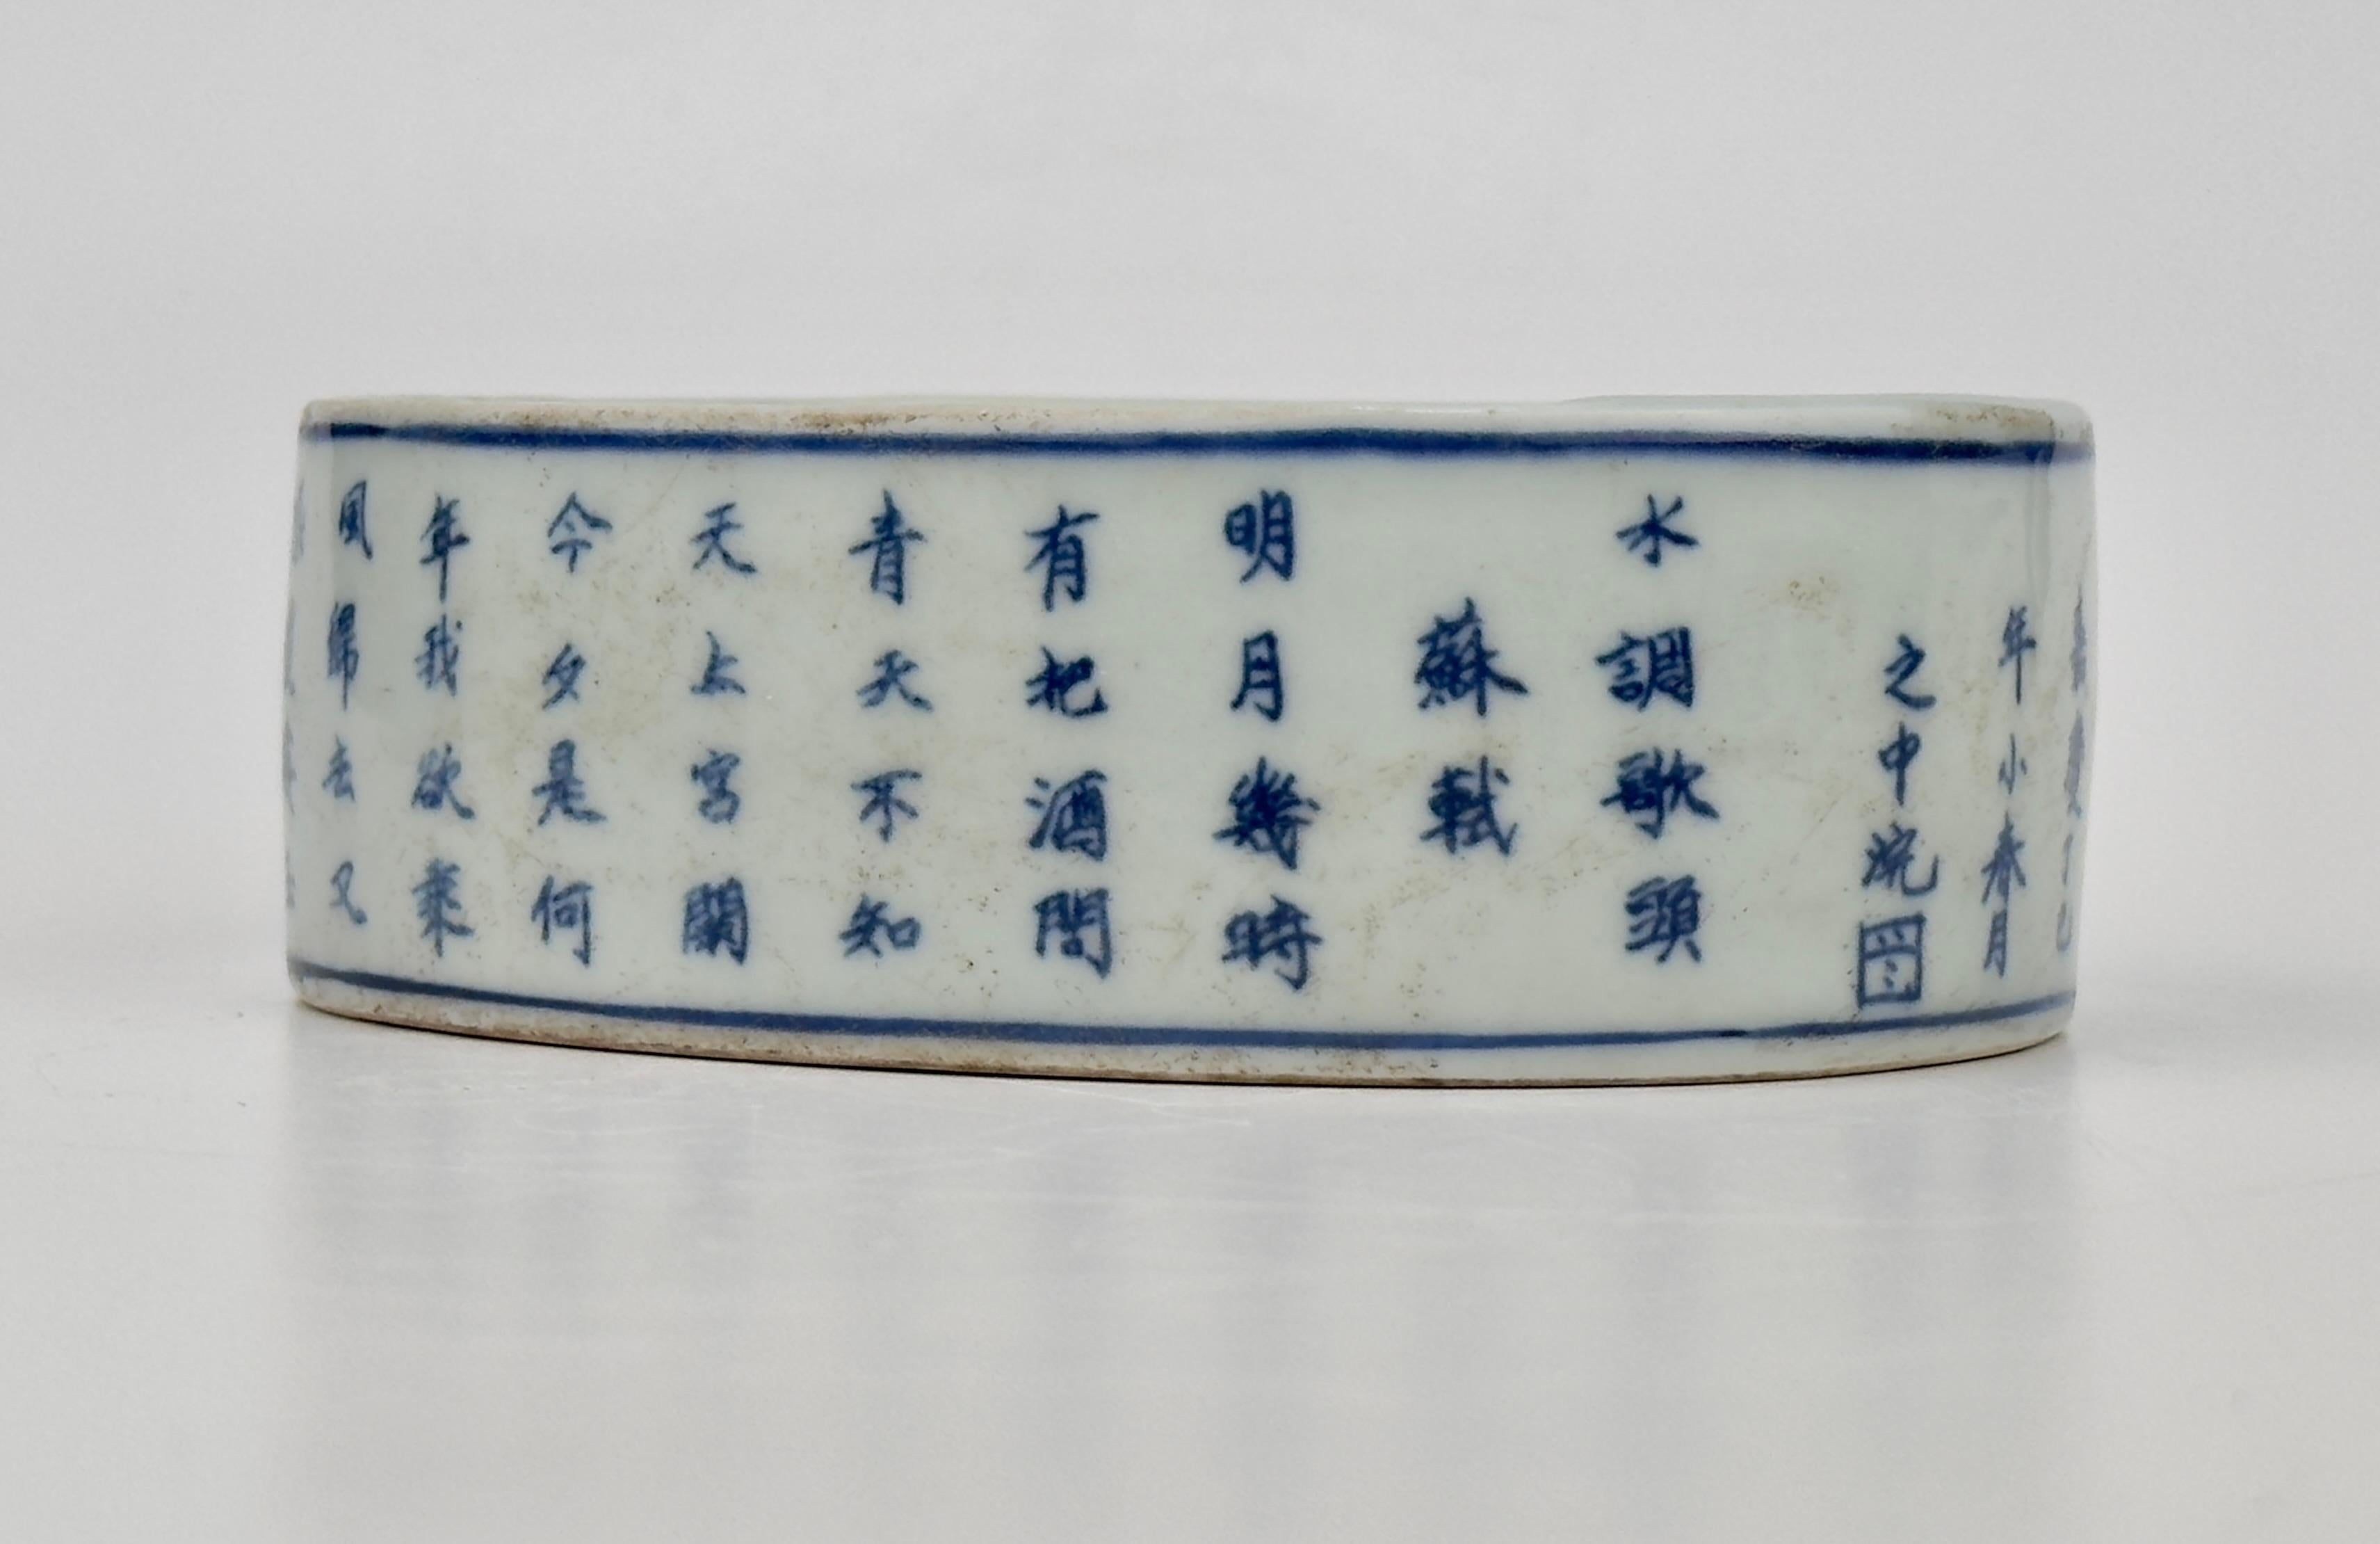 In der späten Qing-Dynastie war es beliebt, Kalligraphie und Poesie in die Keramik einzuarbeiten. Das Stück hat eine flache, ovale Form und wurde wahrscheinlich als Tuschestein verwendet, eines der wichtigsten Werkzeuge im Studio eines Gelehrten.